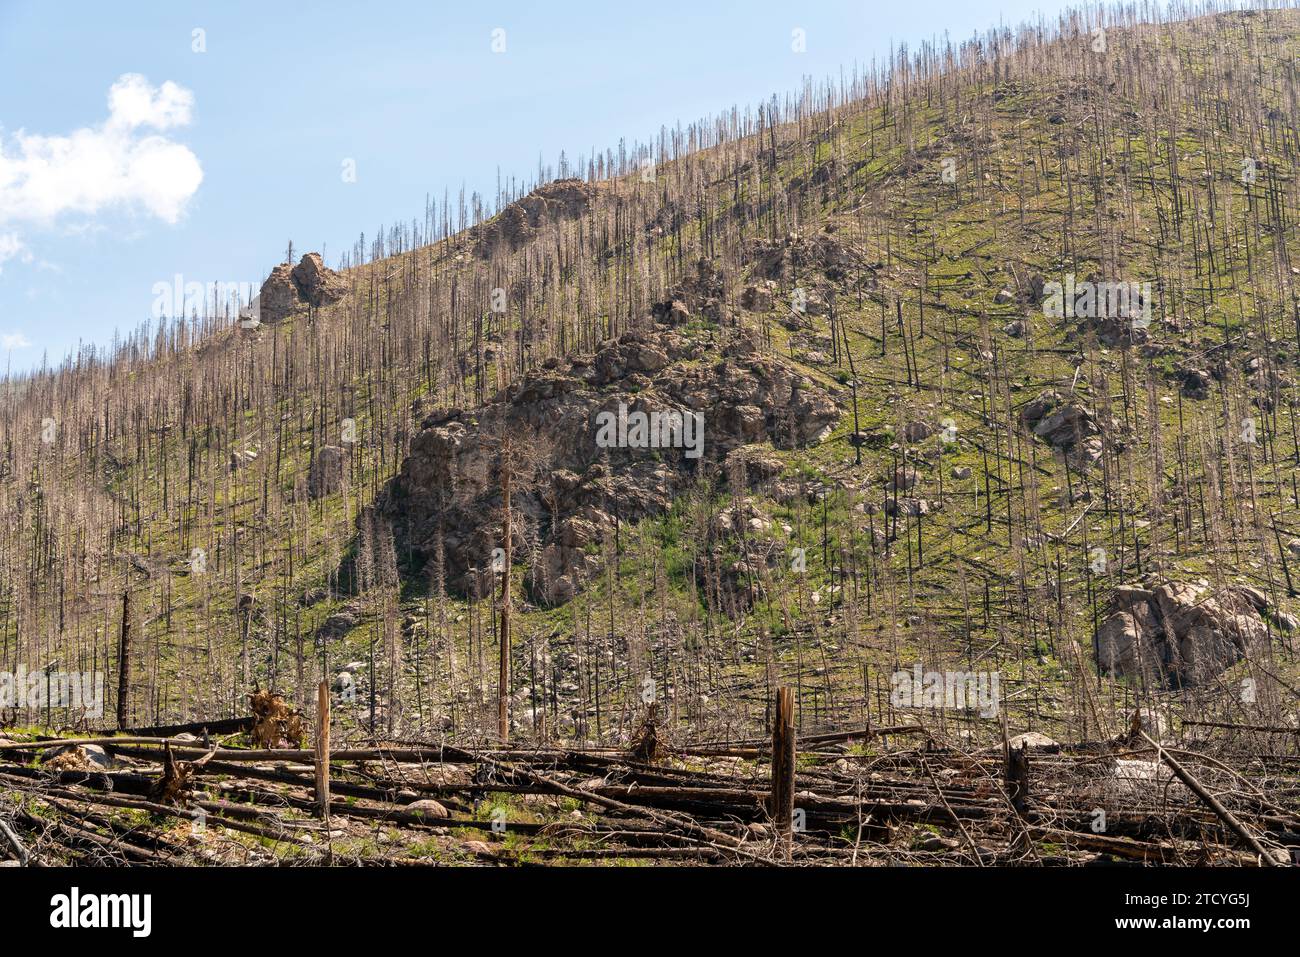 Un'aspra collina mostra gli effetti degli incendi, con una nuova vegetazione che emerge tra i resti carbonizzati del Rocky Mountain National Park. Foto Stock